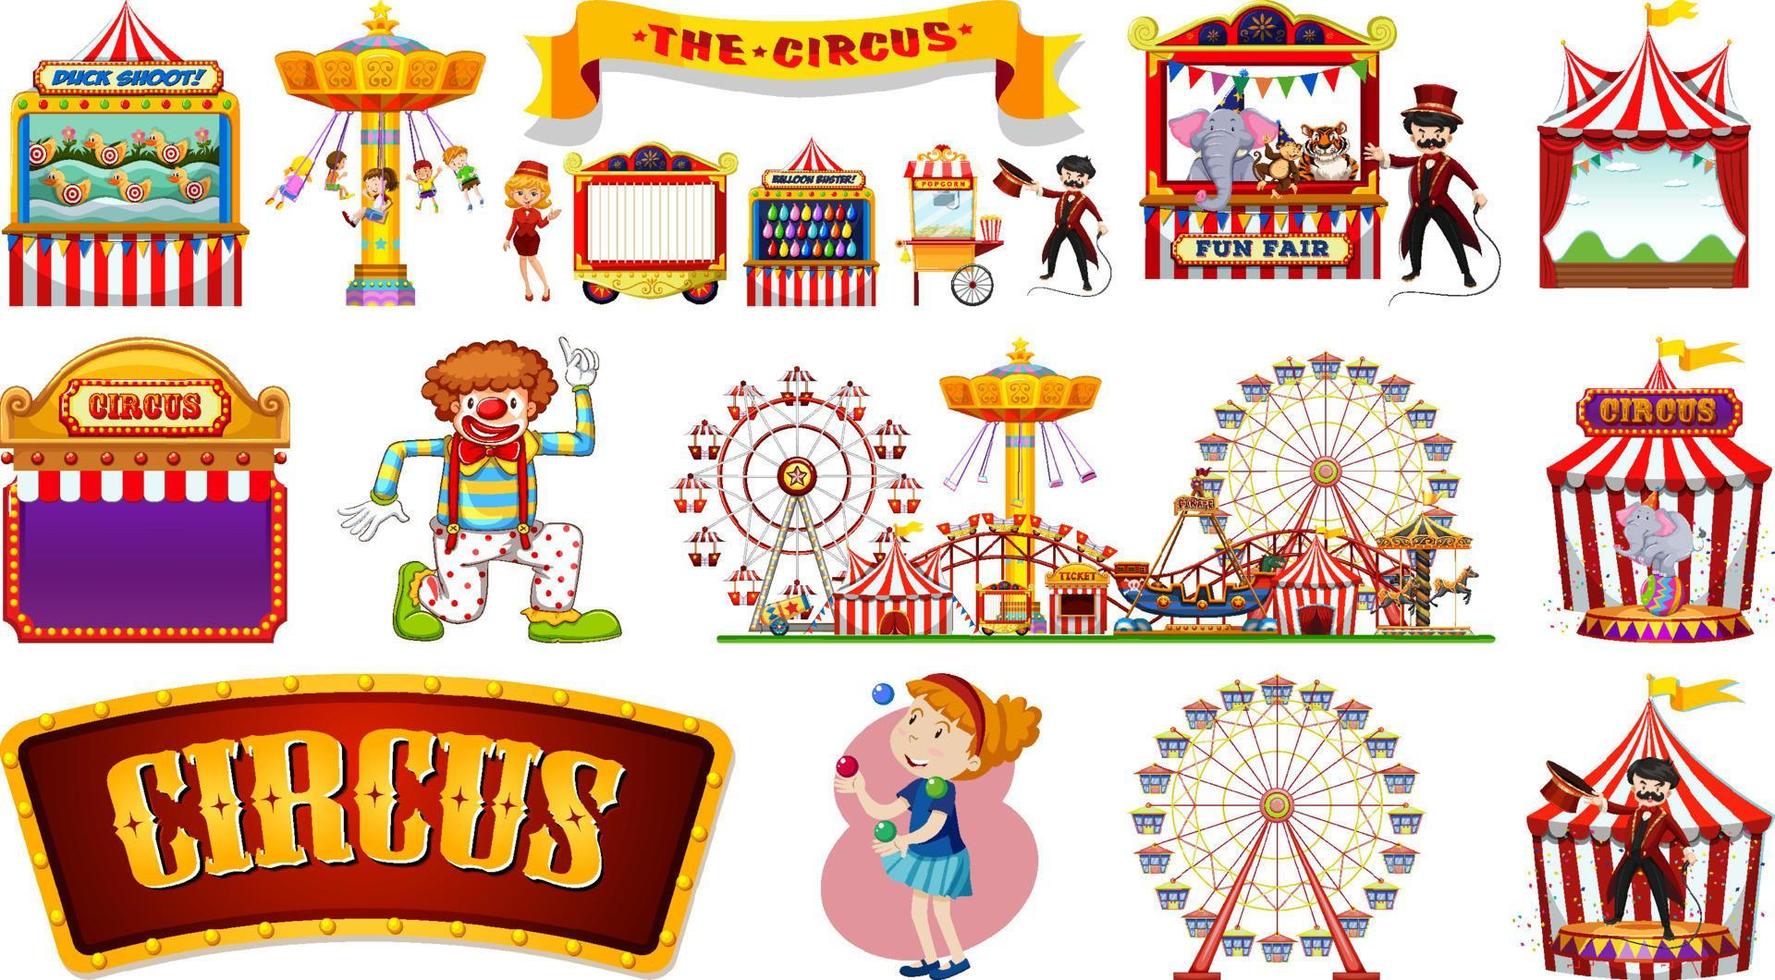 Reihe von Zirkusfiguren und Vergnügungsparkelementen vektor